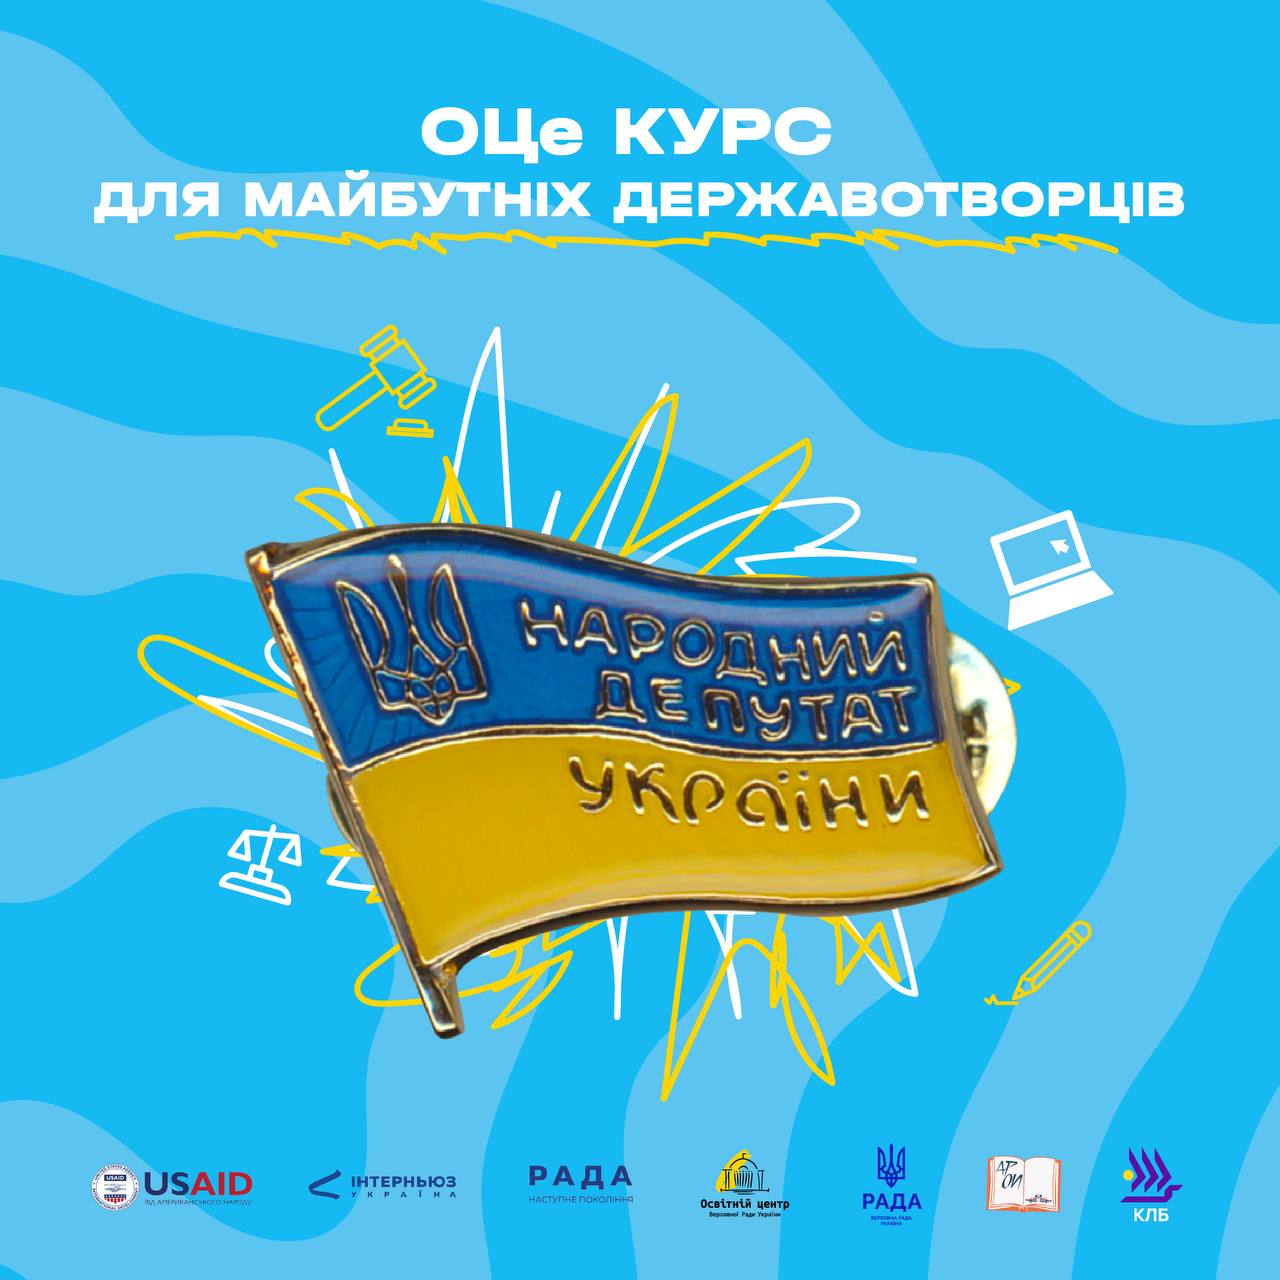 Освітній Центр Верховної Ради України запрошує студентів на парламентський курс для майбутніх державотворців